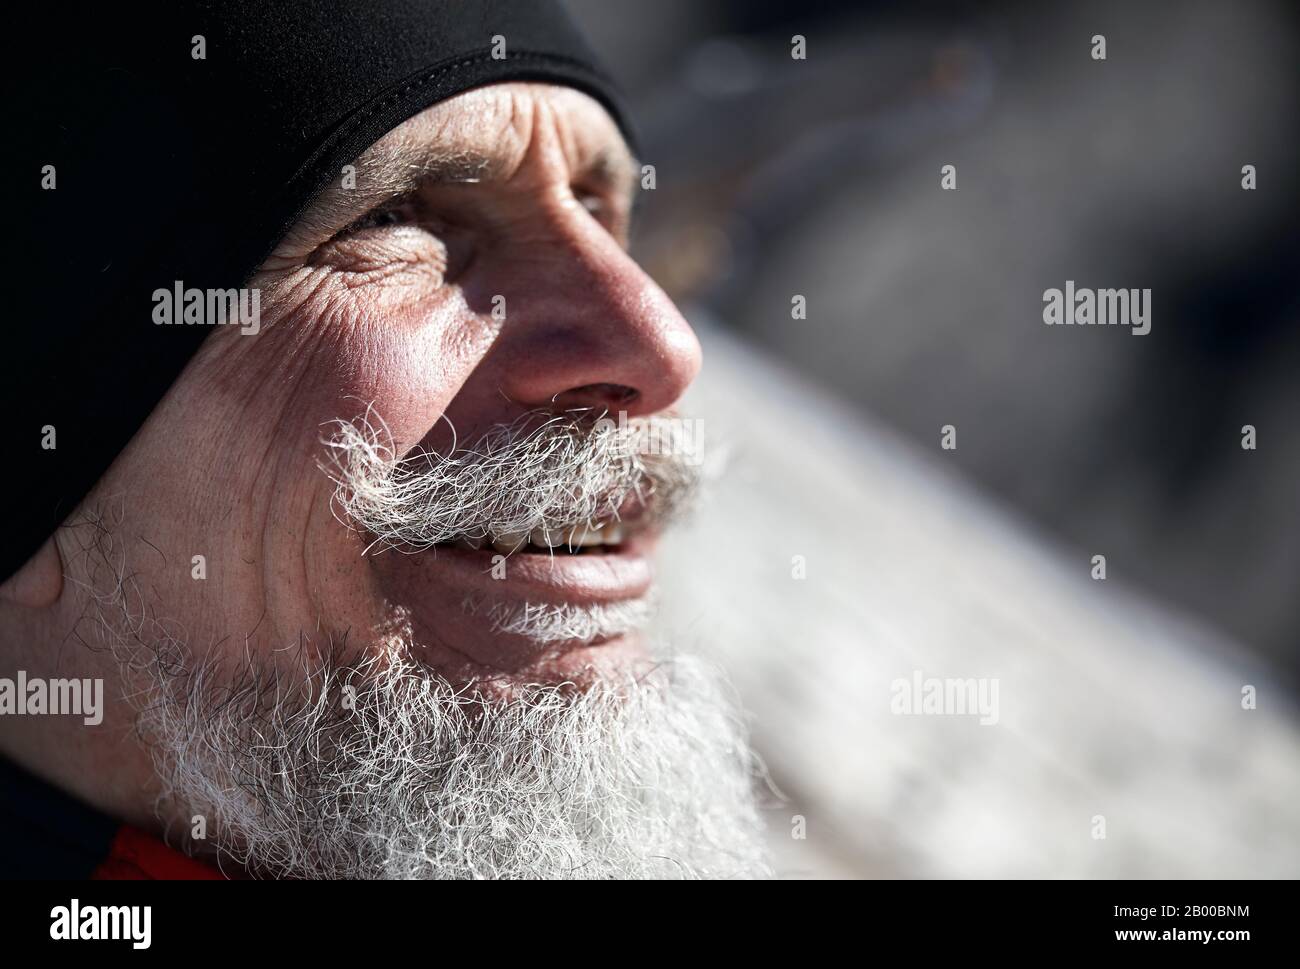 Porträt eines älteren Läufermannes mit grauem Bart, der vor dem Hintergrund der Winterberge lächelt Stockfoto